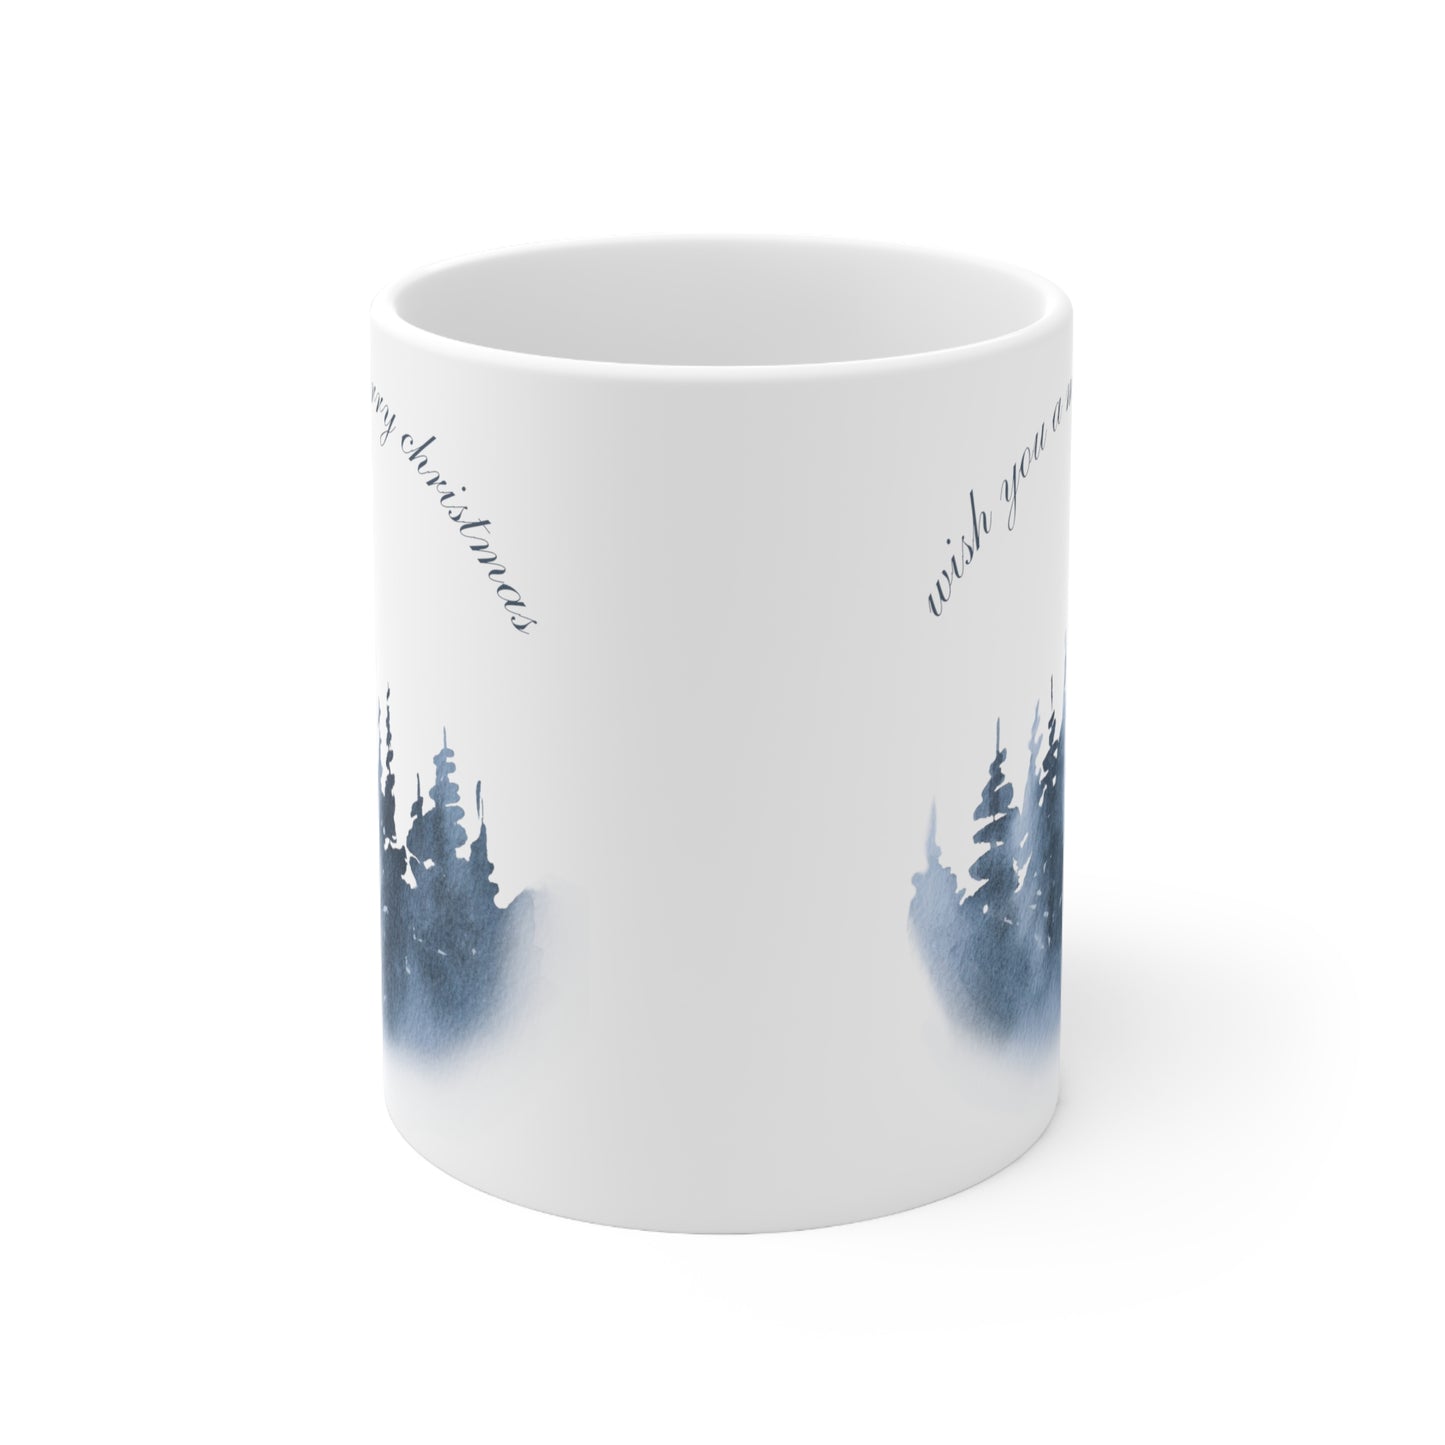 Wish You a Merry Christmas Printed Ceramic Mug, 11oz